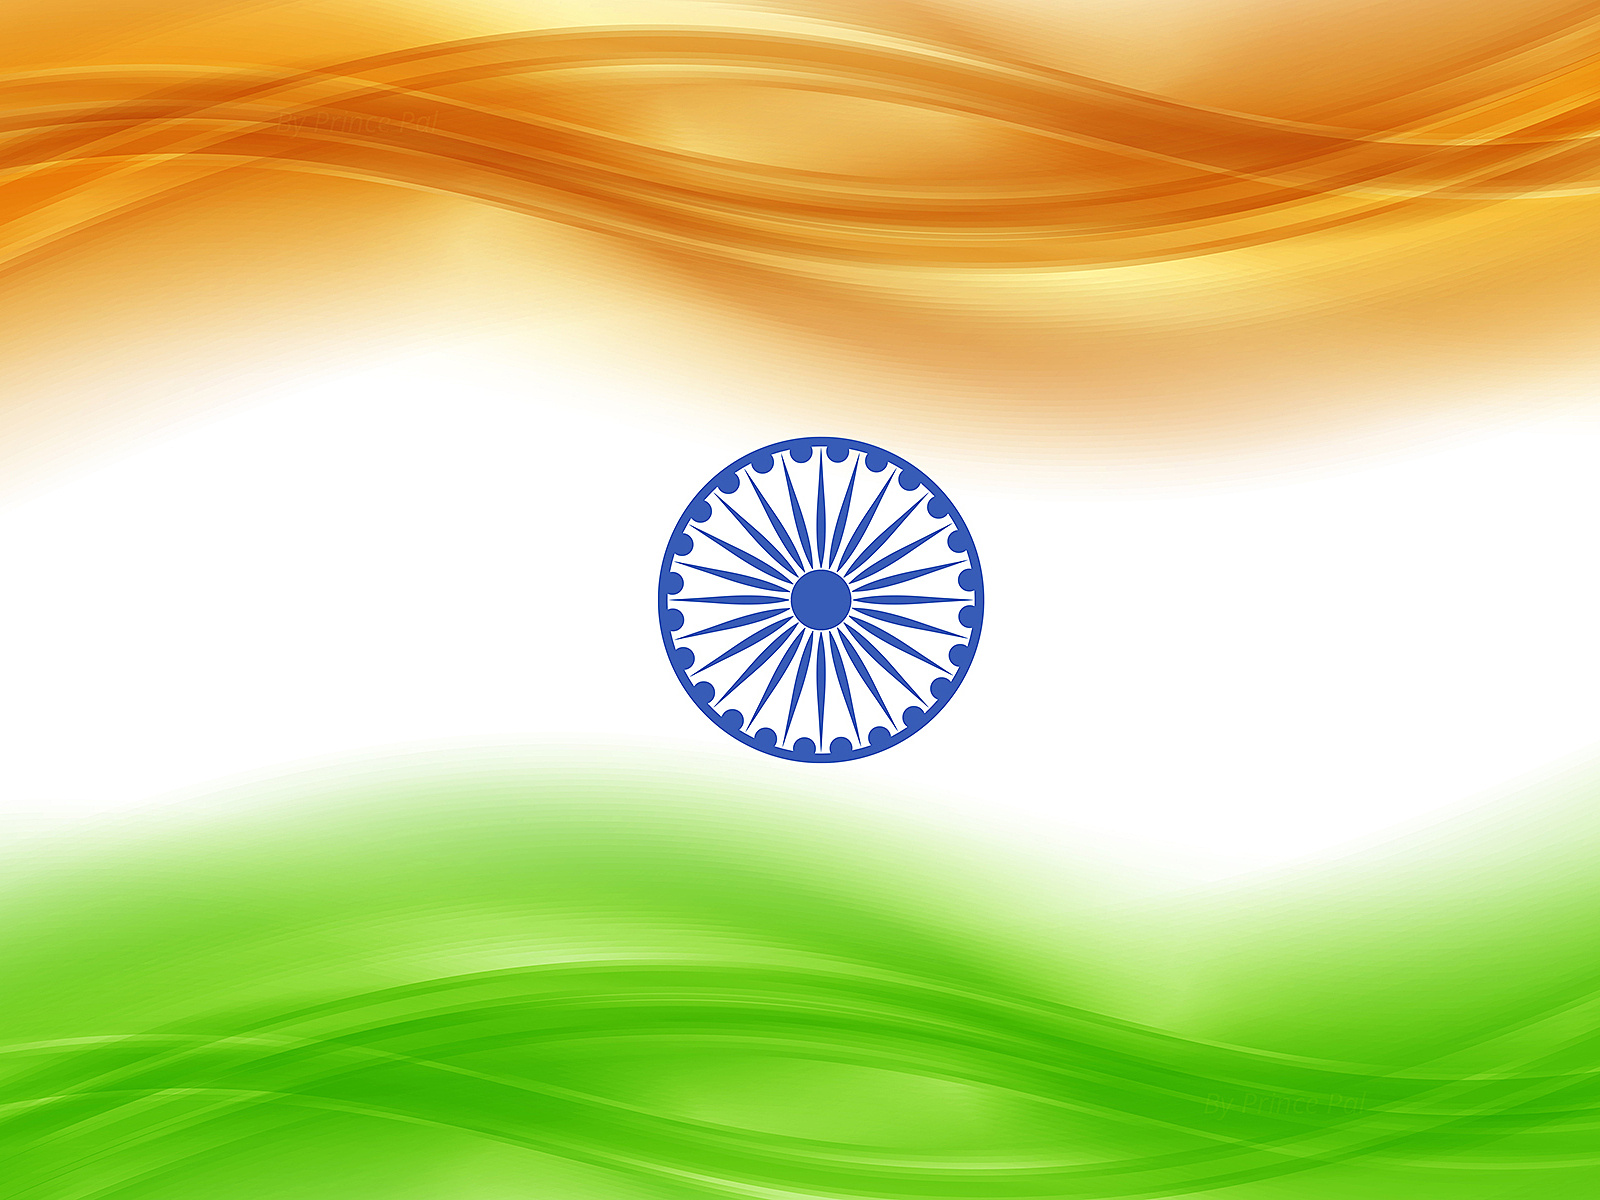 インドの旗の壁紙,国旗,空,サークル,日光,風景